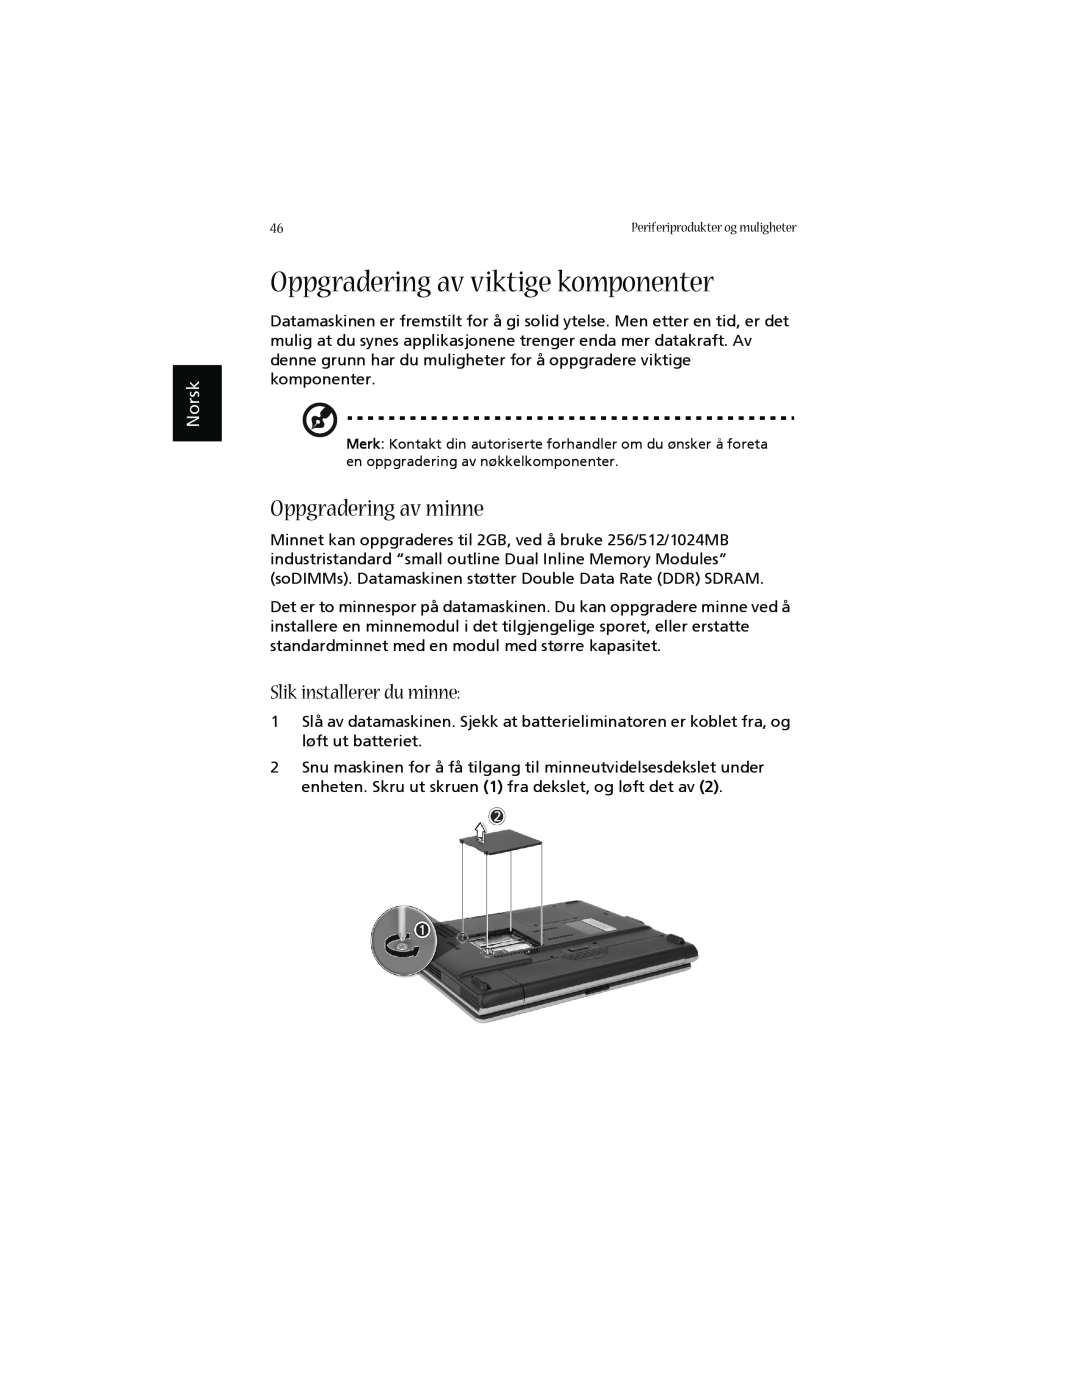 Acer 1660 manual Oppgradering av viktige komponenter, Oppgradering av minne, Slik installerer du minne, Norsk 